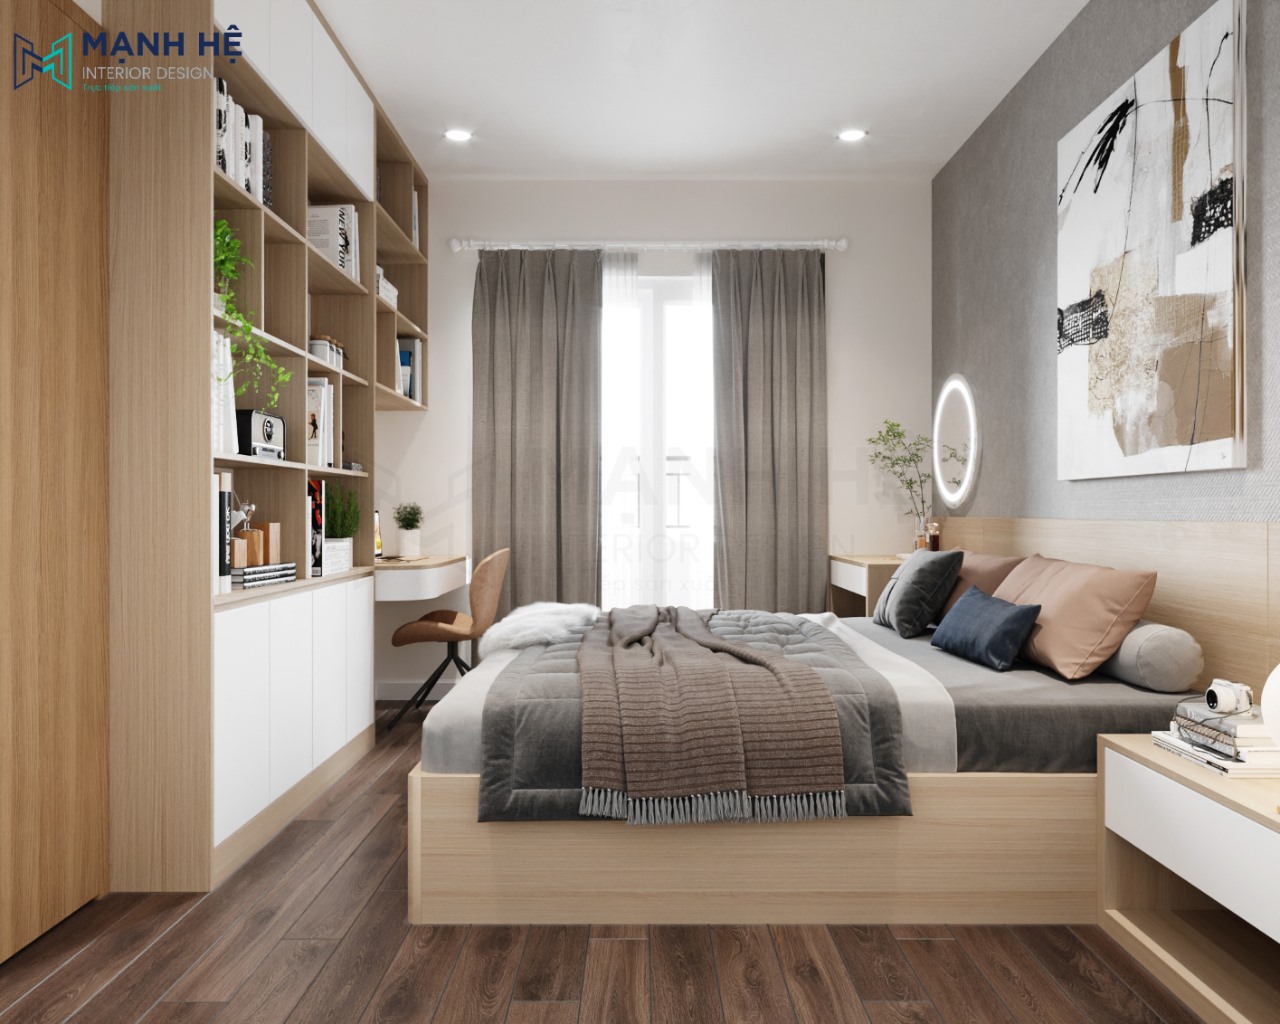 Đồ nội thất trong phòng ngủ sử dụng toàn bộ gỗ công nghiệp với giá thành phải chăng